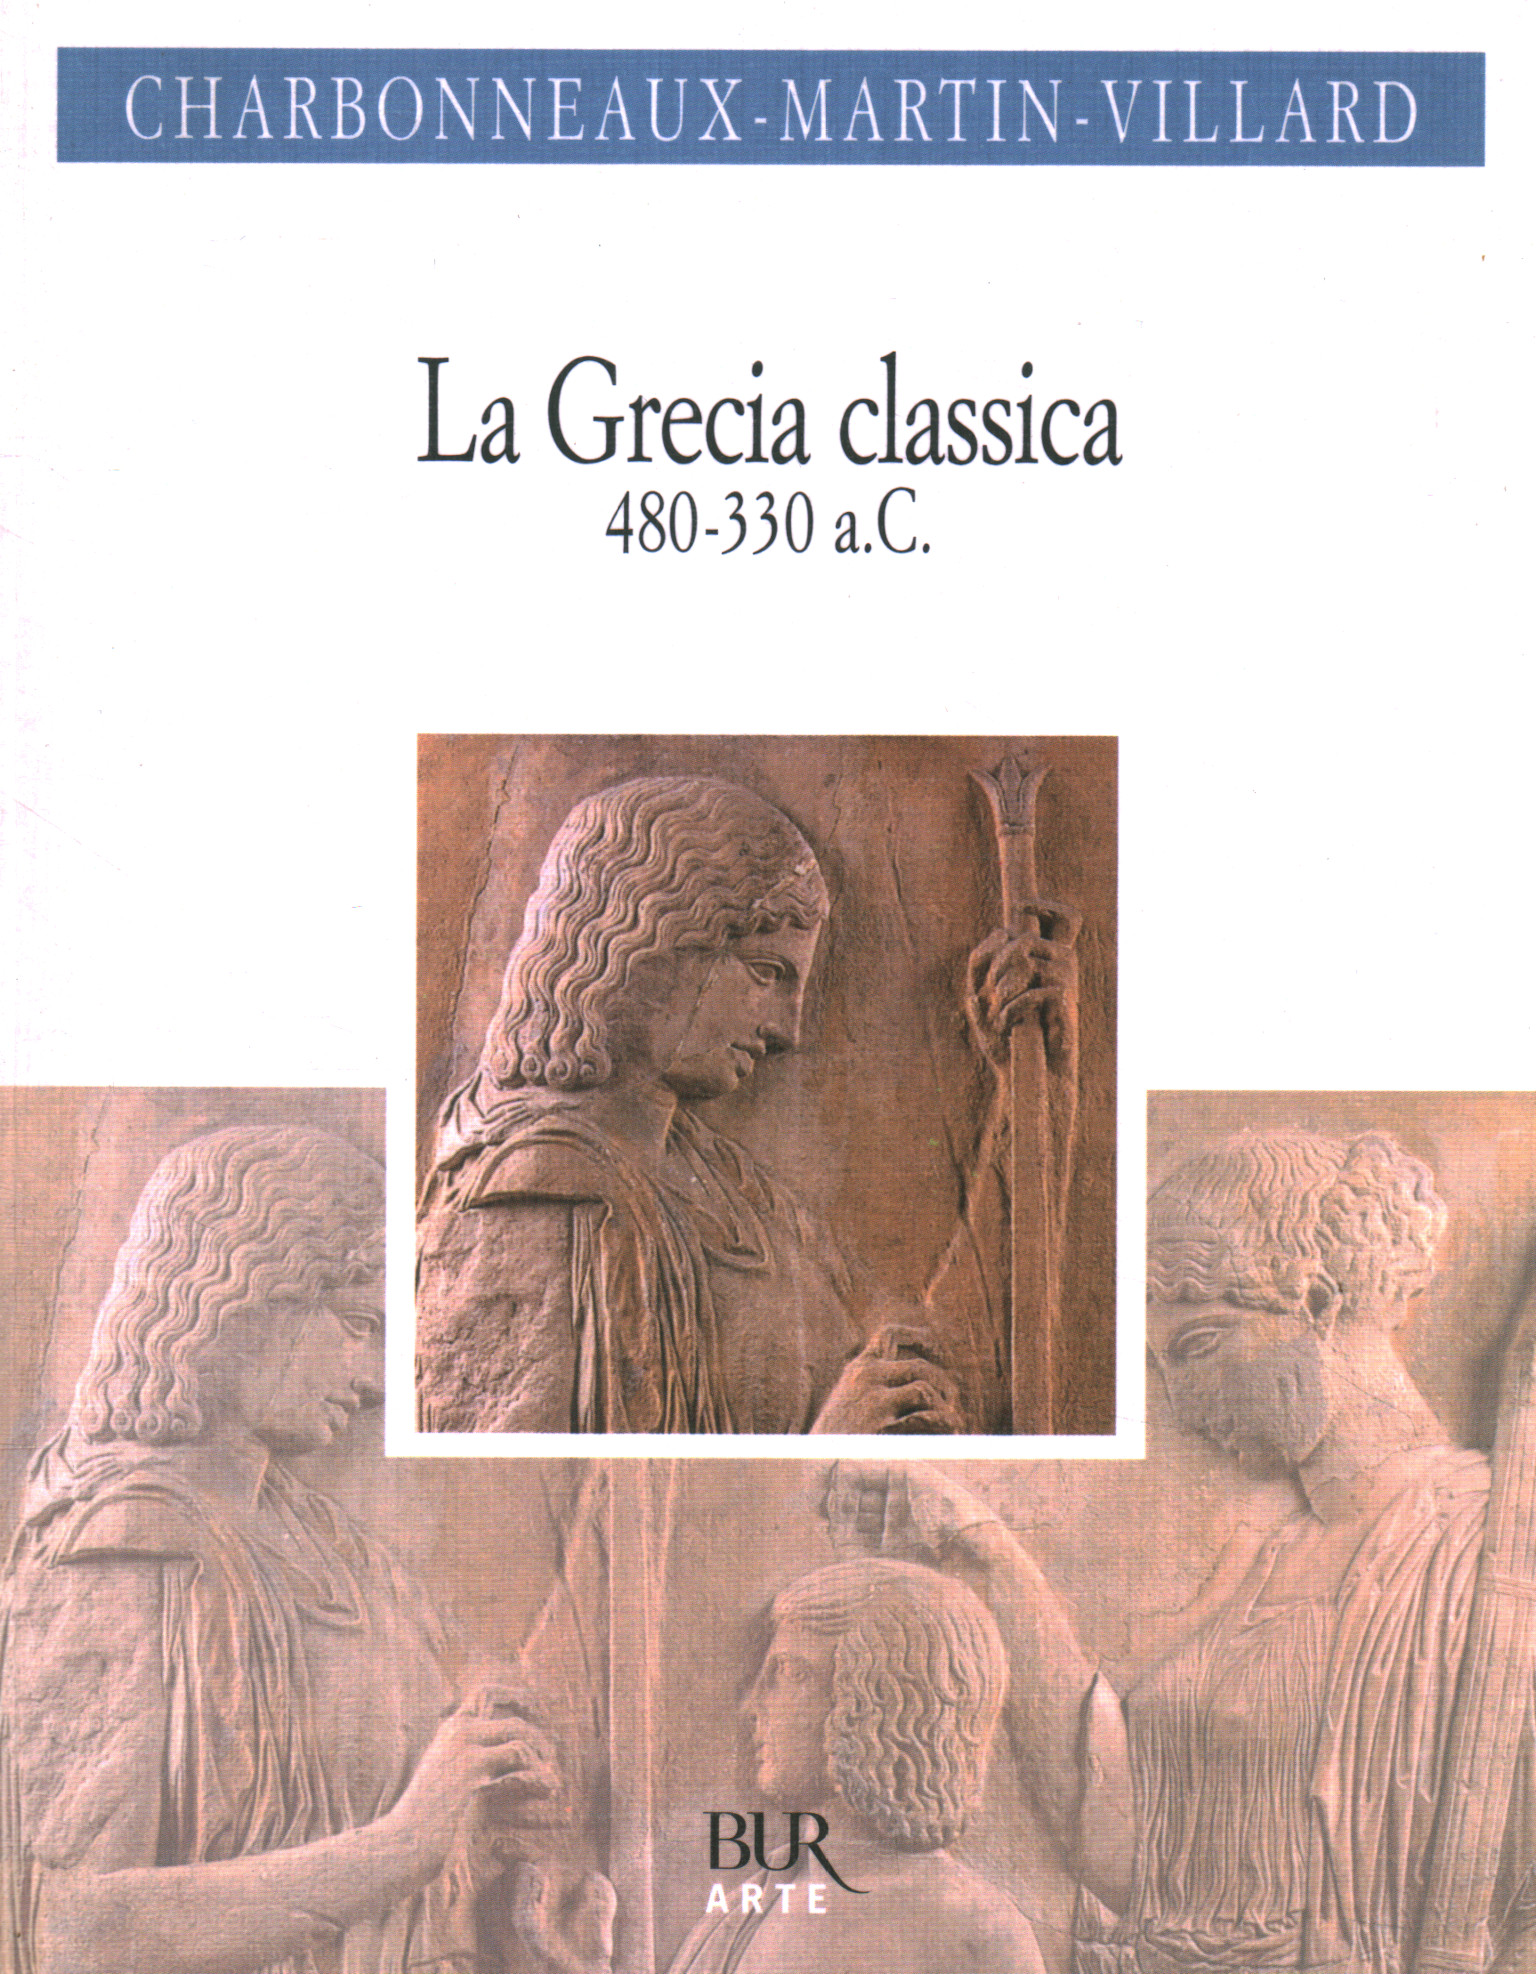 Grecia clásica (480-330 a. C.)